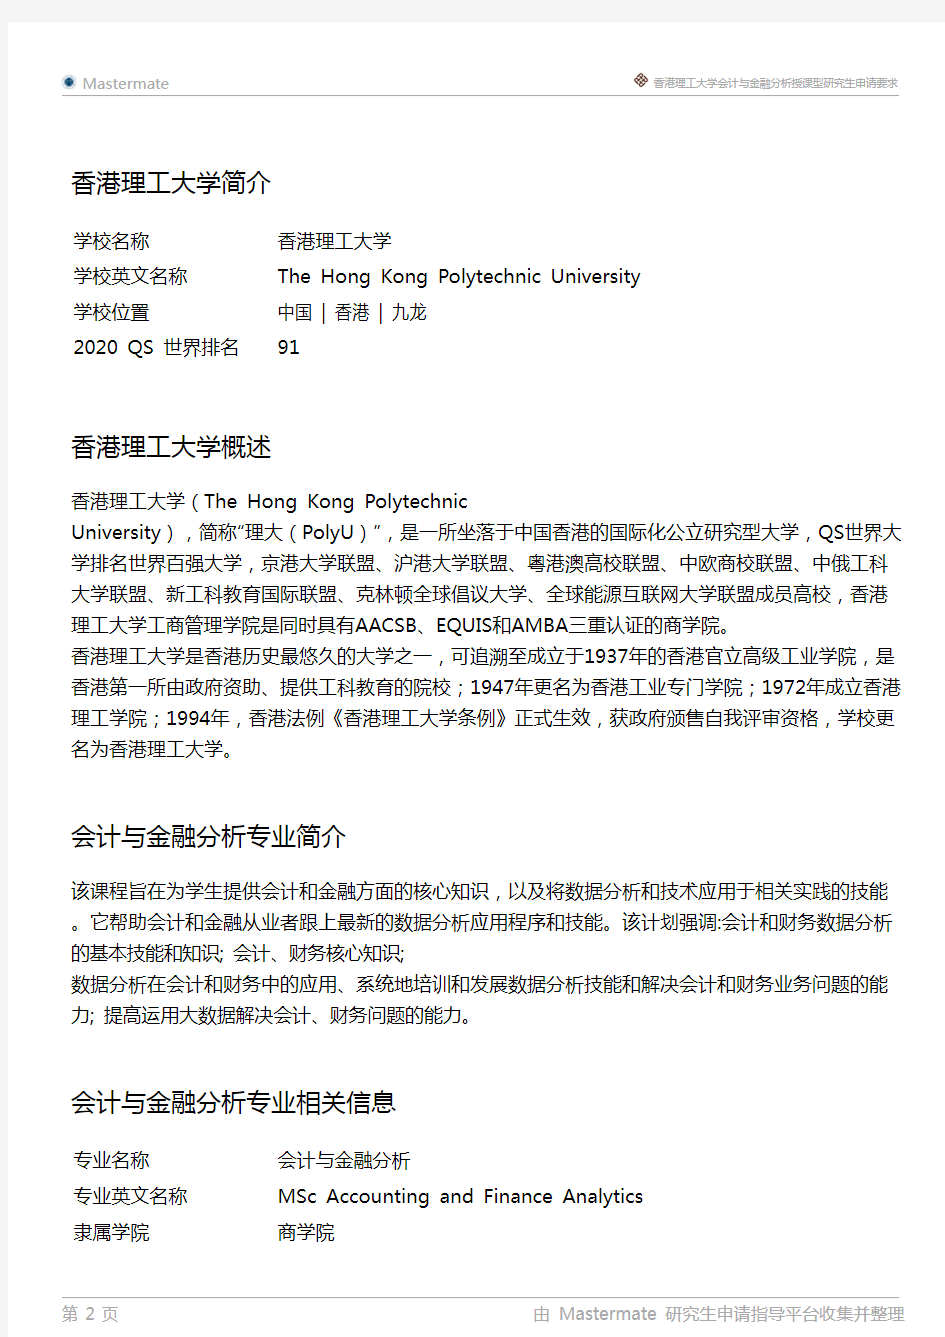 香港理工大学会计与金融分析授课型研究生申请要求